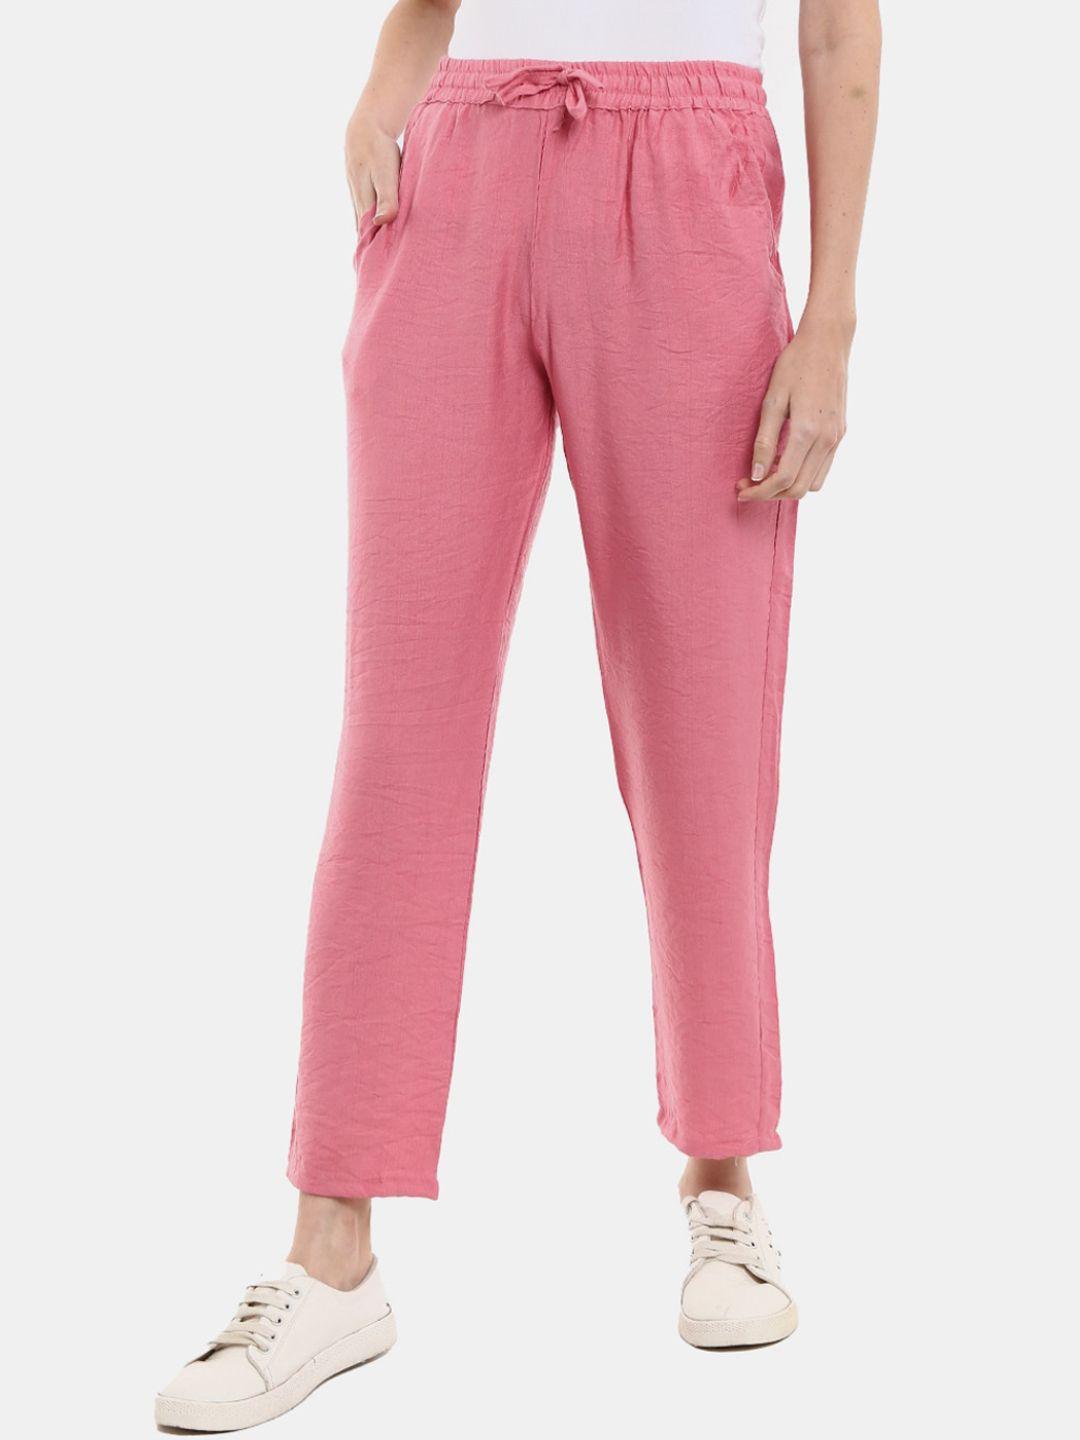 v-mart pink solid cotton track pants